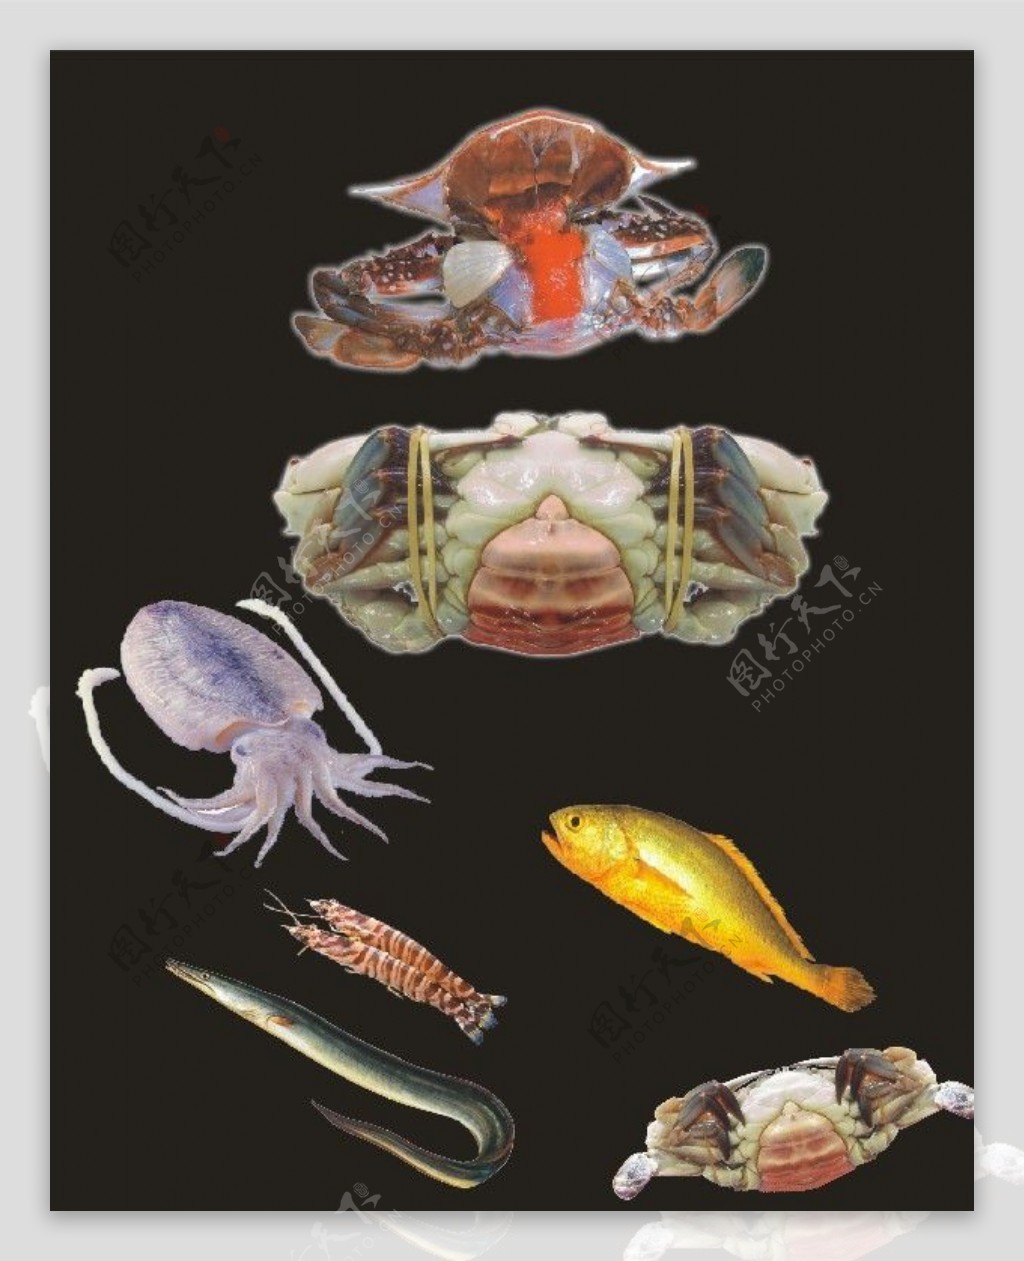 螃蟹黄鱼墨鱼鳗鱼海鲜图片